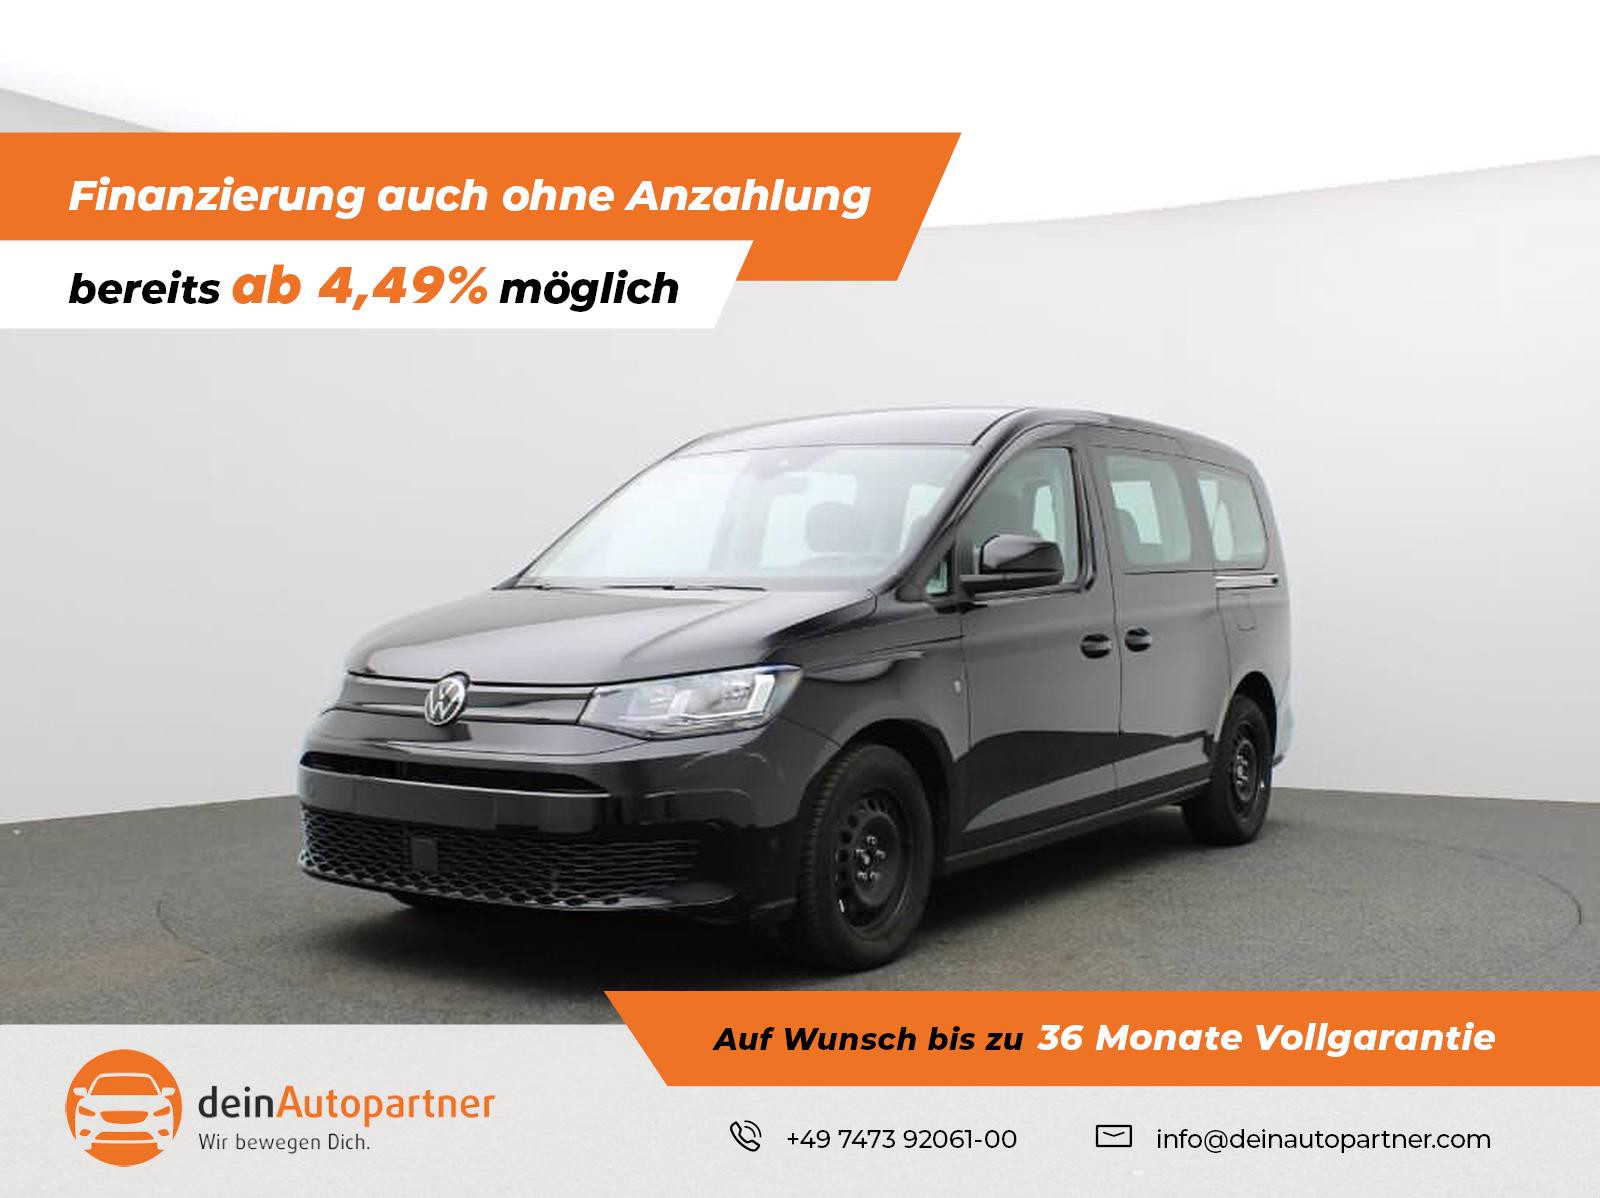 Volkswagen Caddy gebraucht kaufen in Mössingen Preis 31950 eur - Int.Nr.:  1331 VERKAUFT